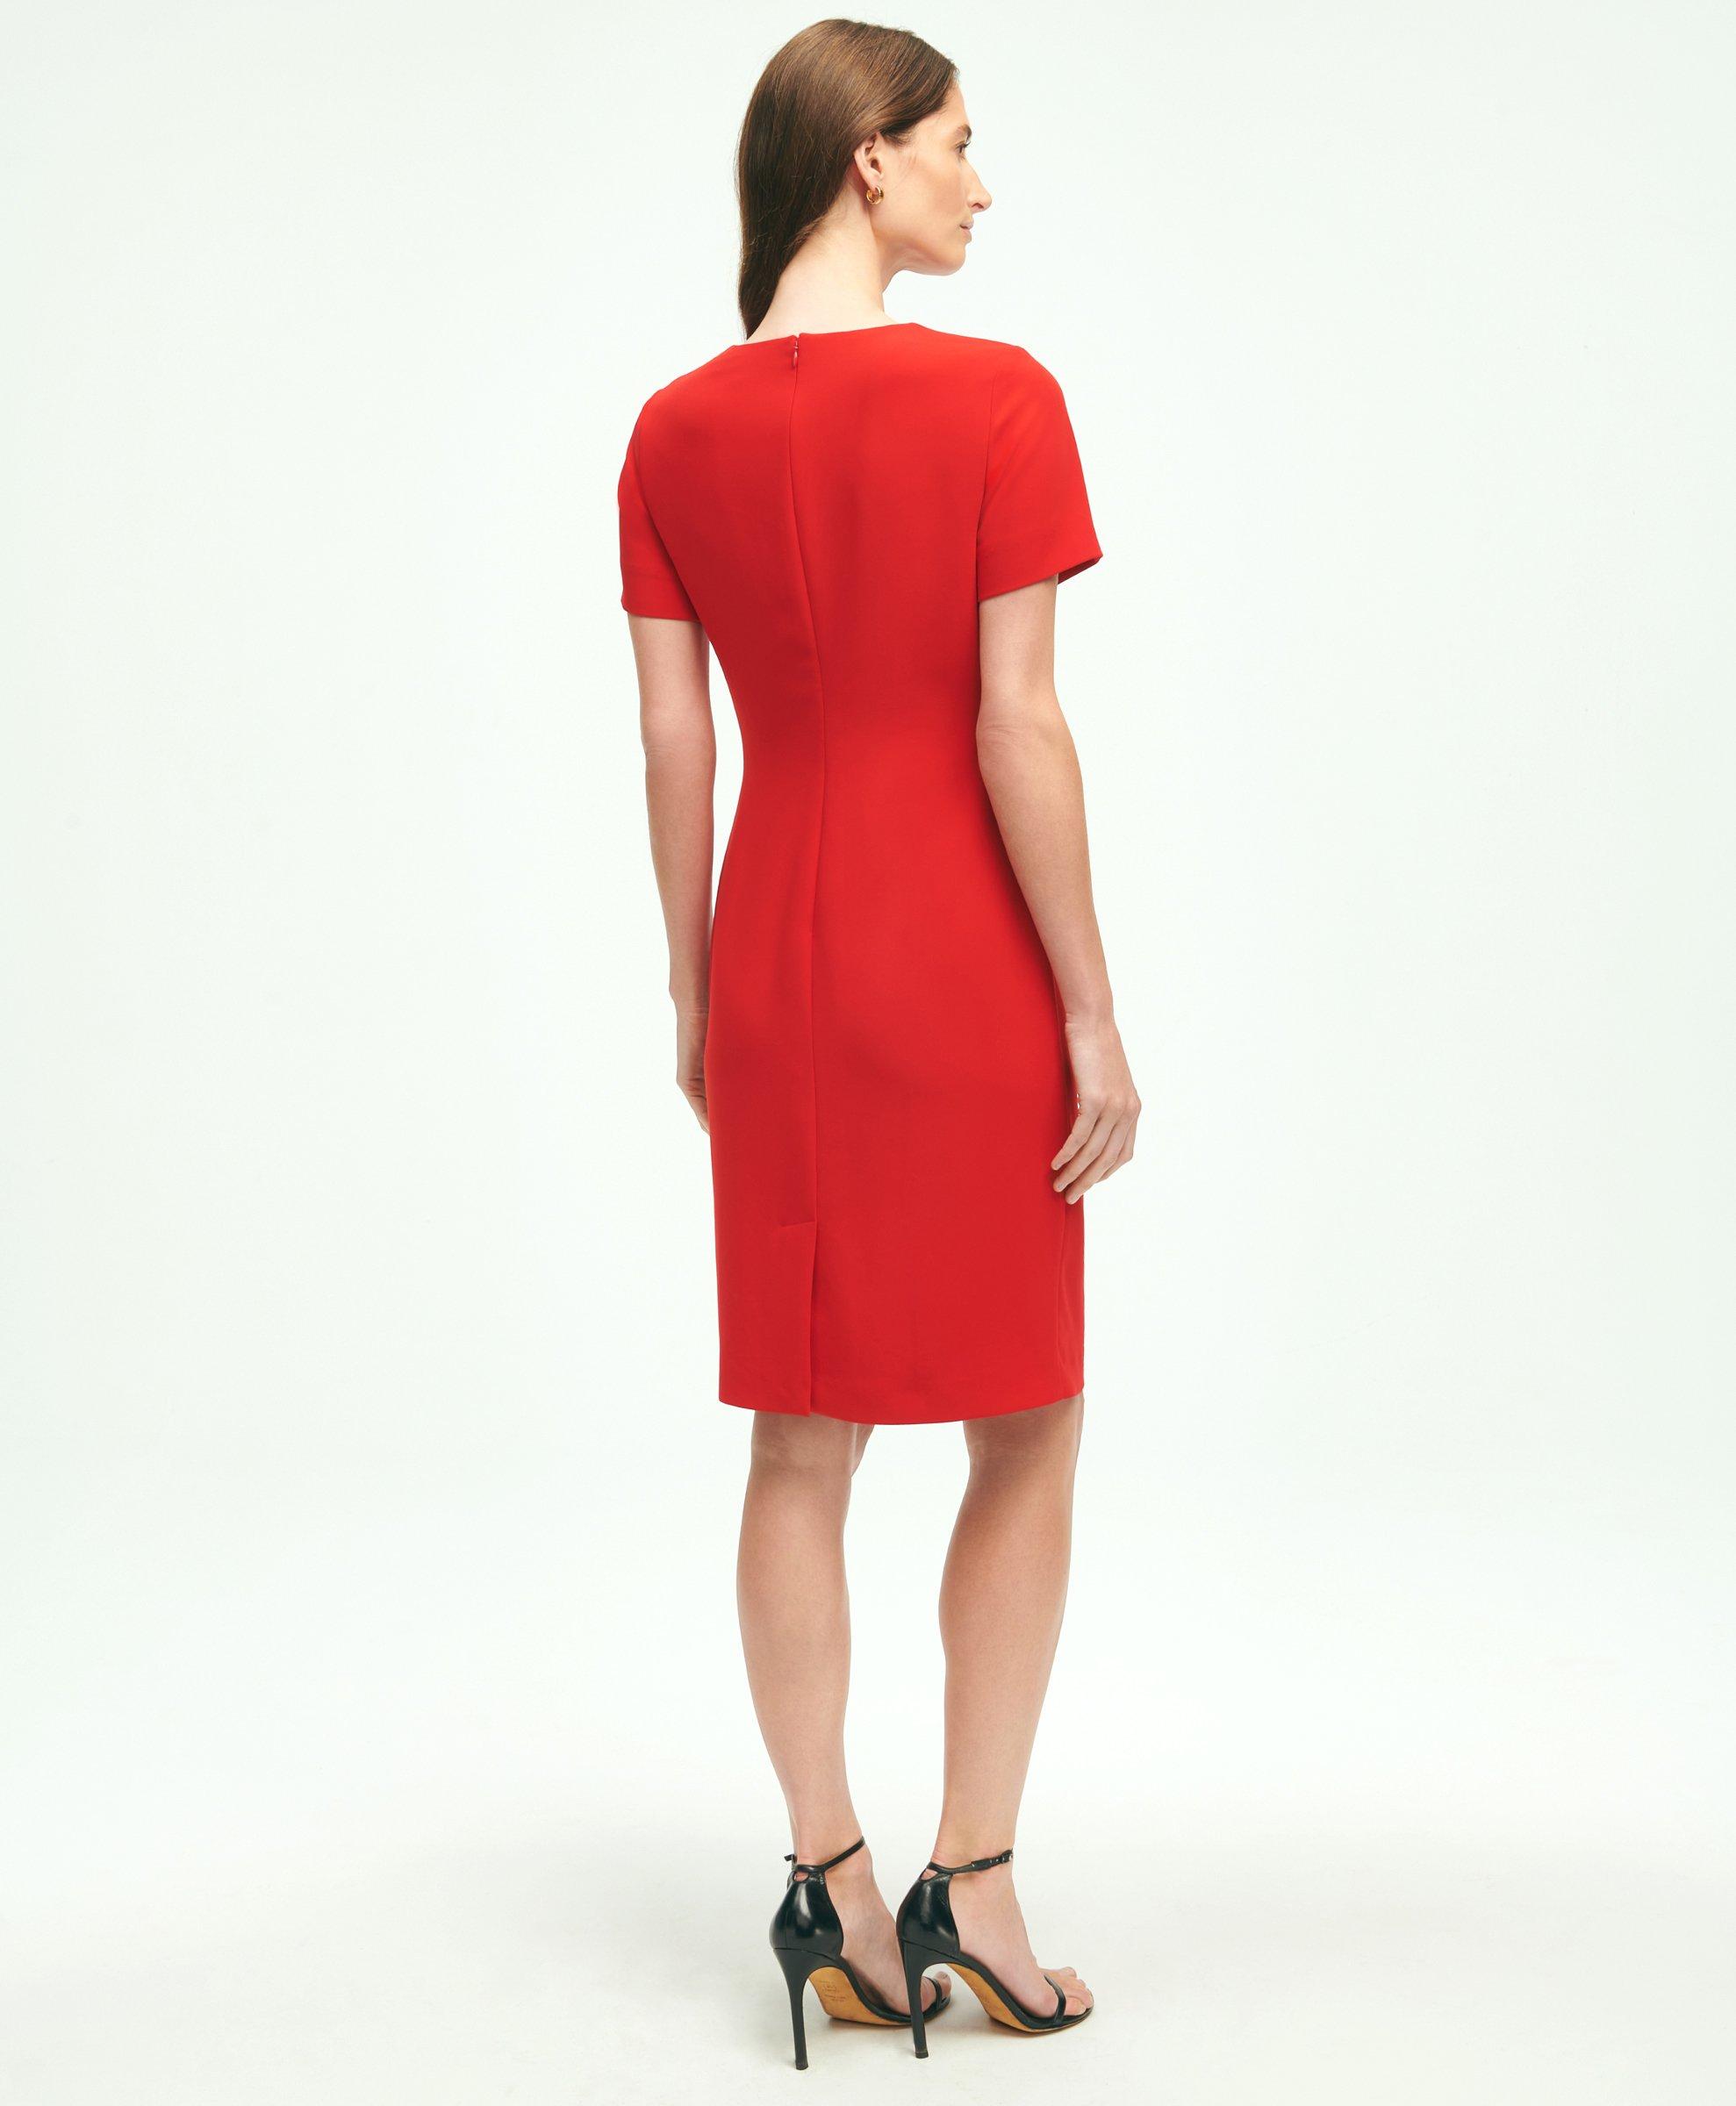 Short-Sleeve Crepe Dress, image 2